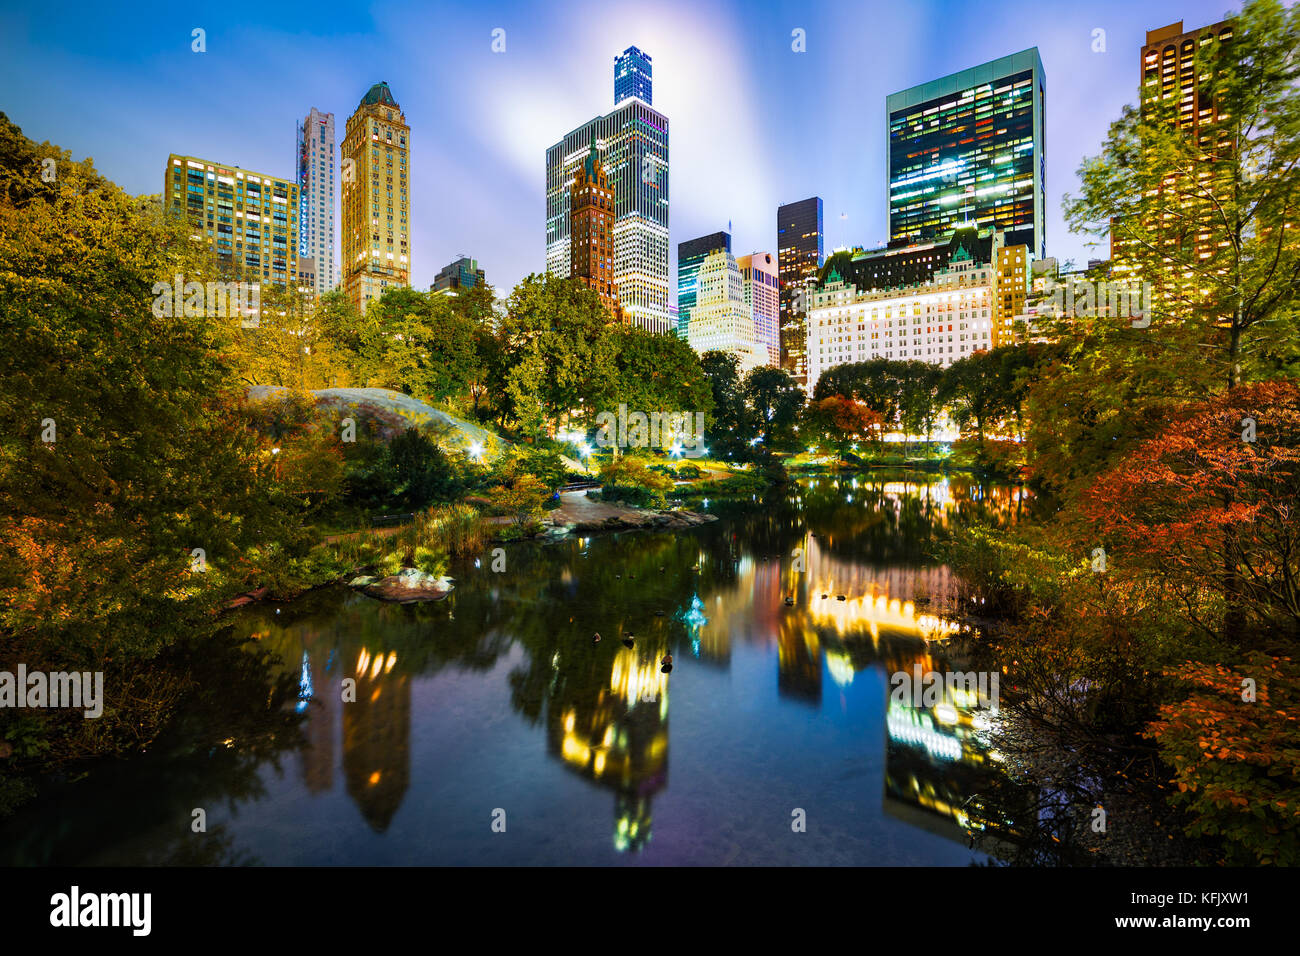 L'étang de nuit, comme vu de gapstow bridge in central park, new york city Banque D'Images